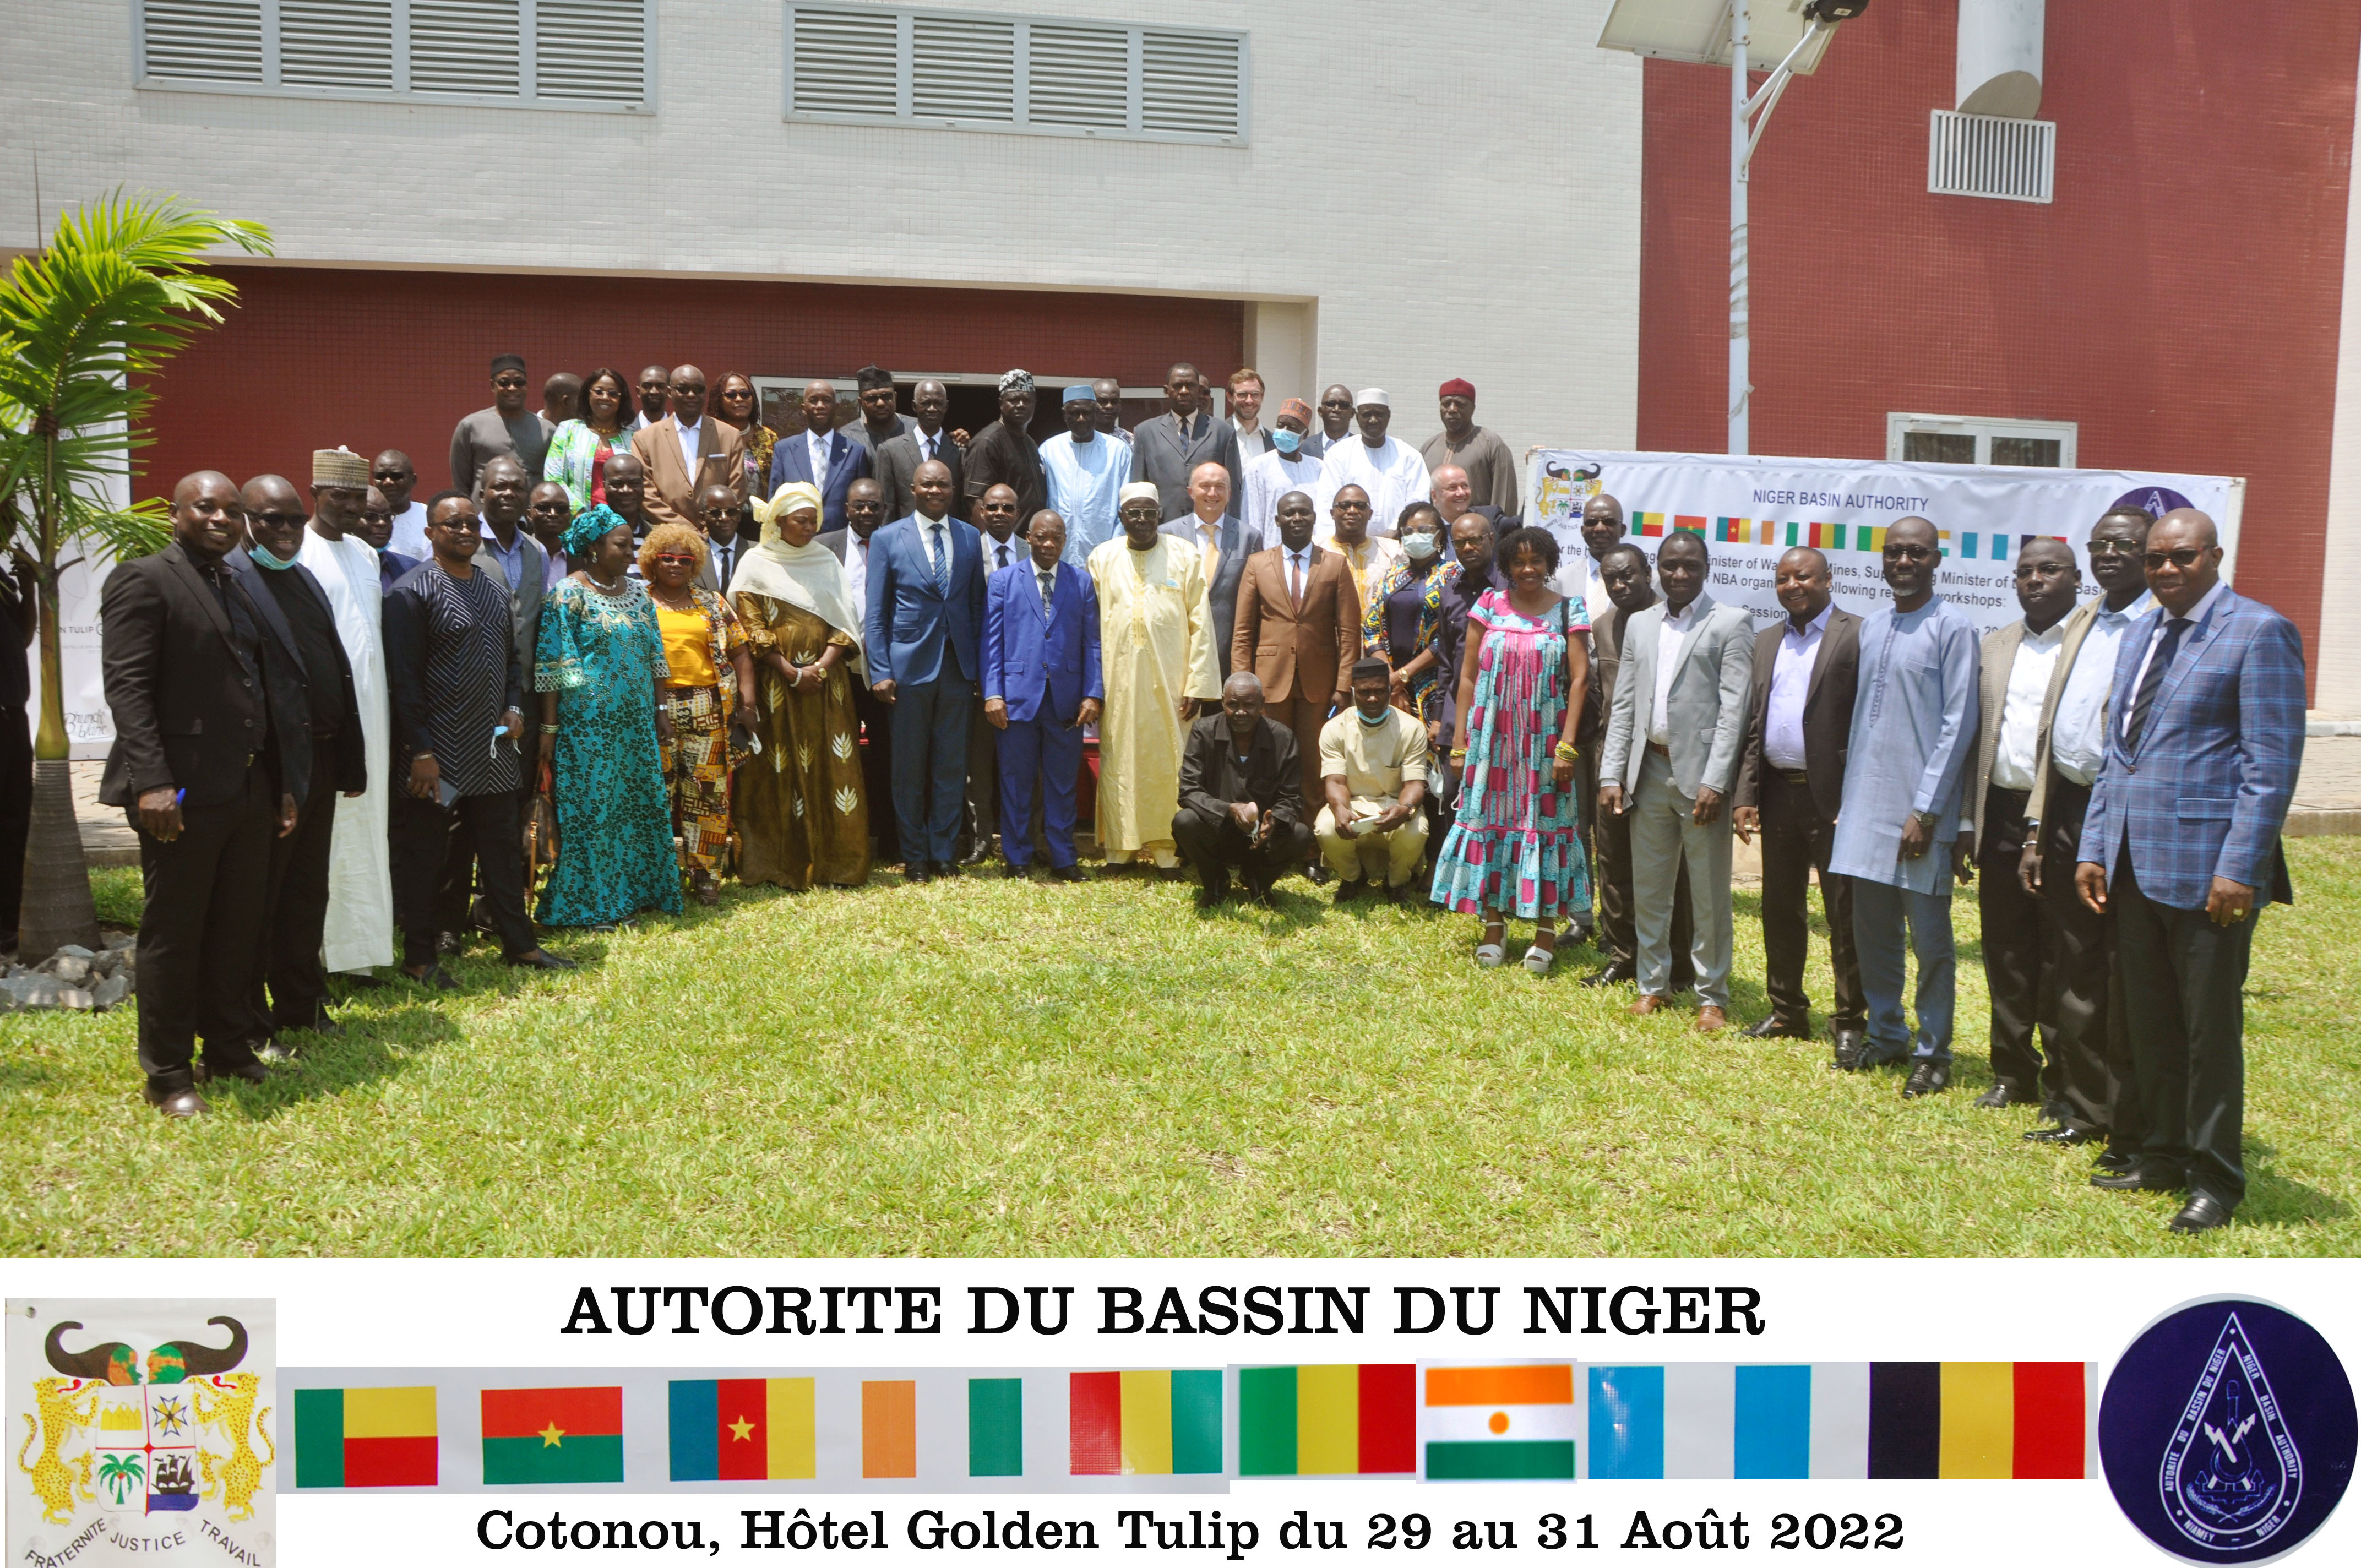 Comité Régional de Pilotage - Autorité du Bassin du Niger